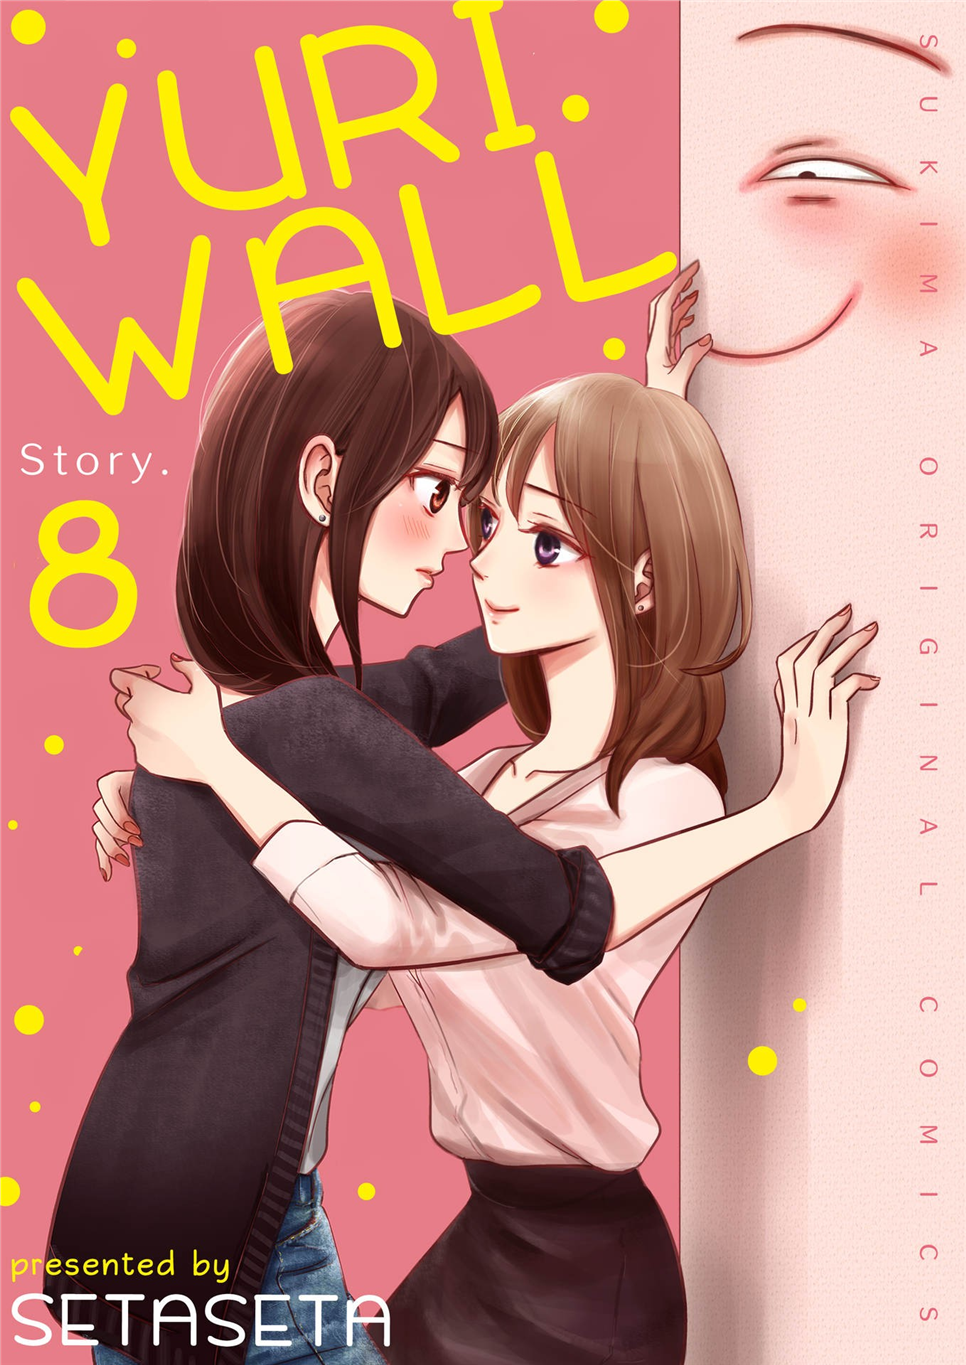 Yuri Wall Story. 8